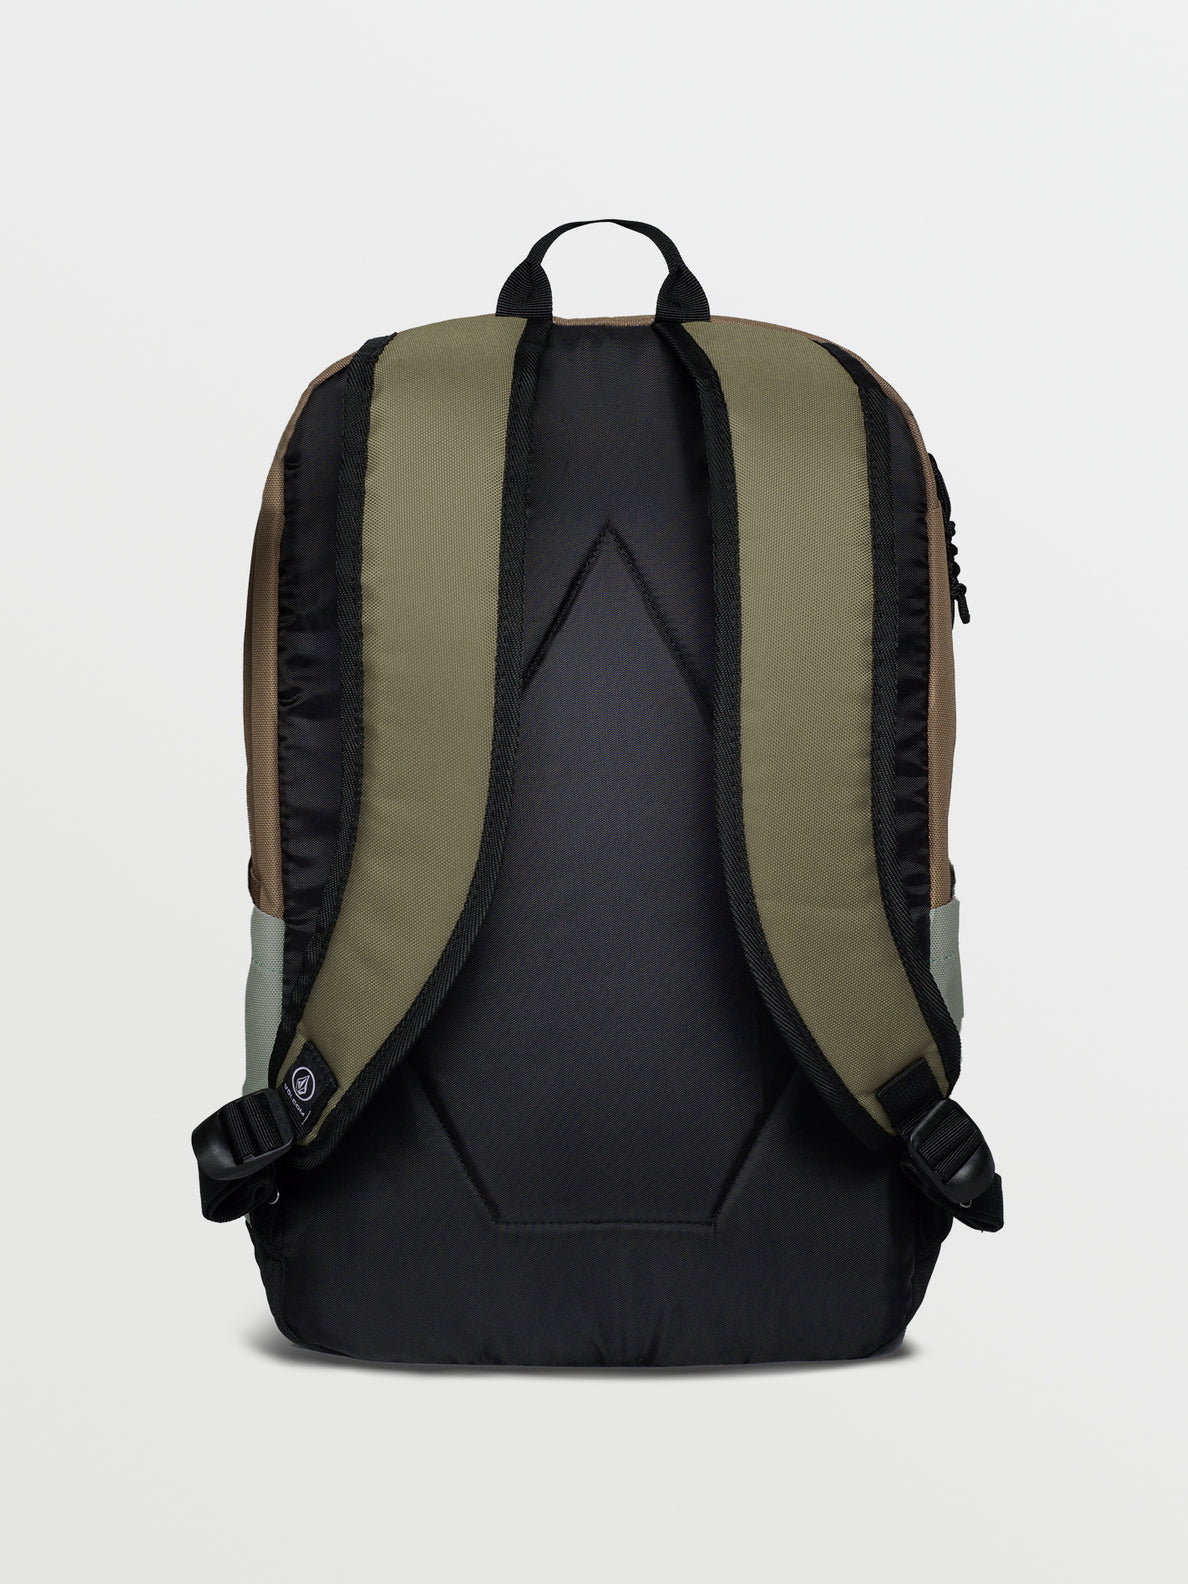 School Backpack - Dusty Brown